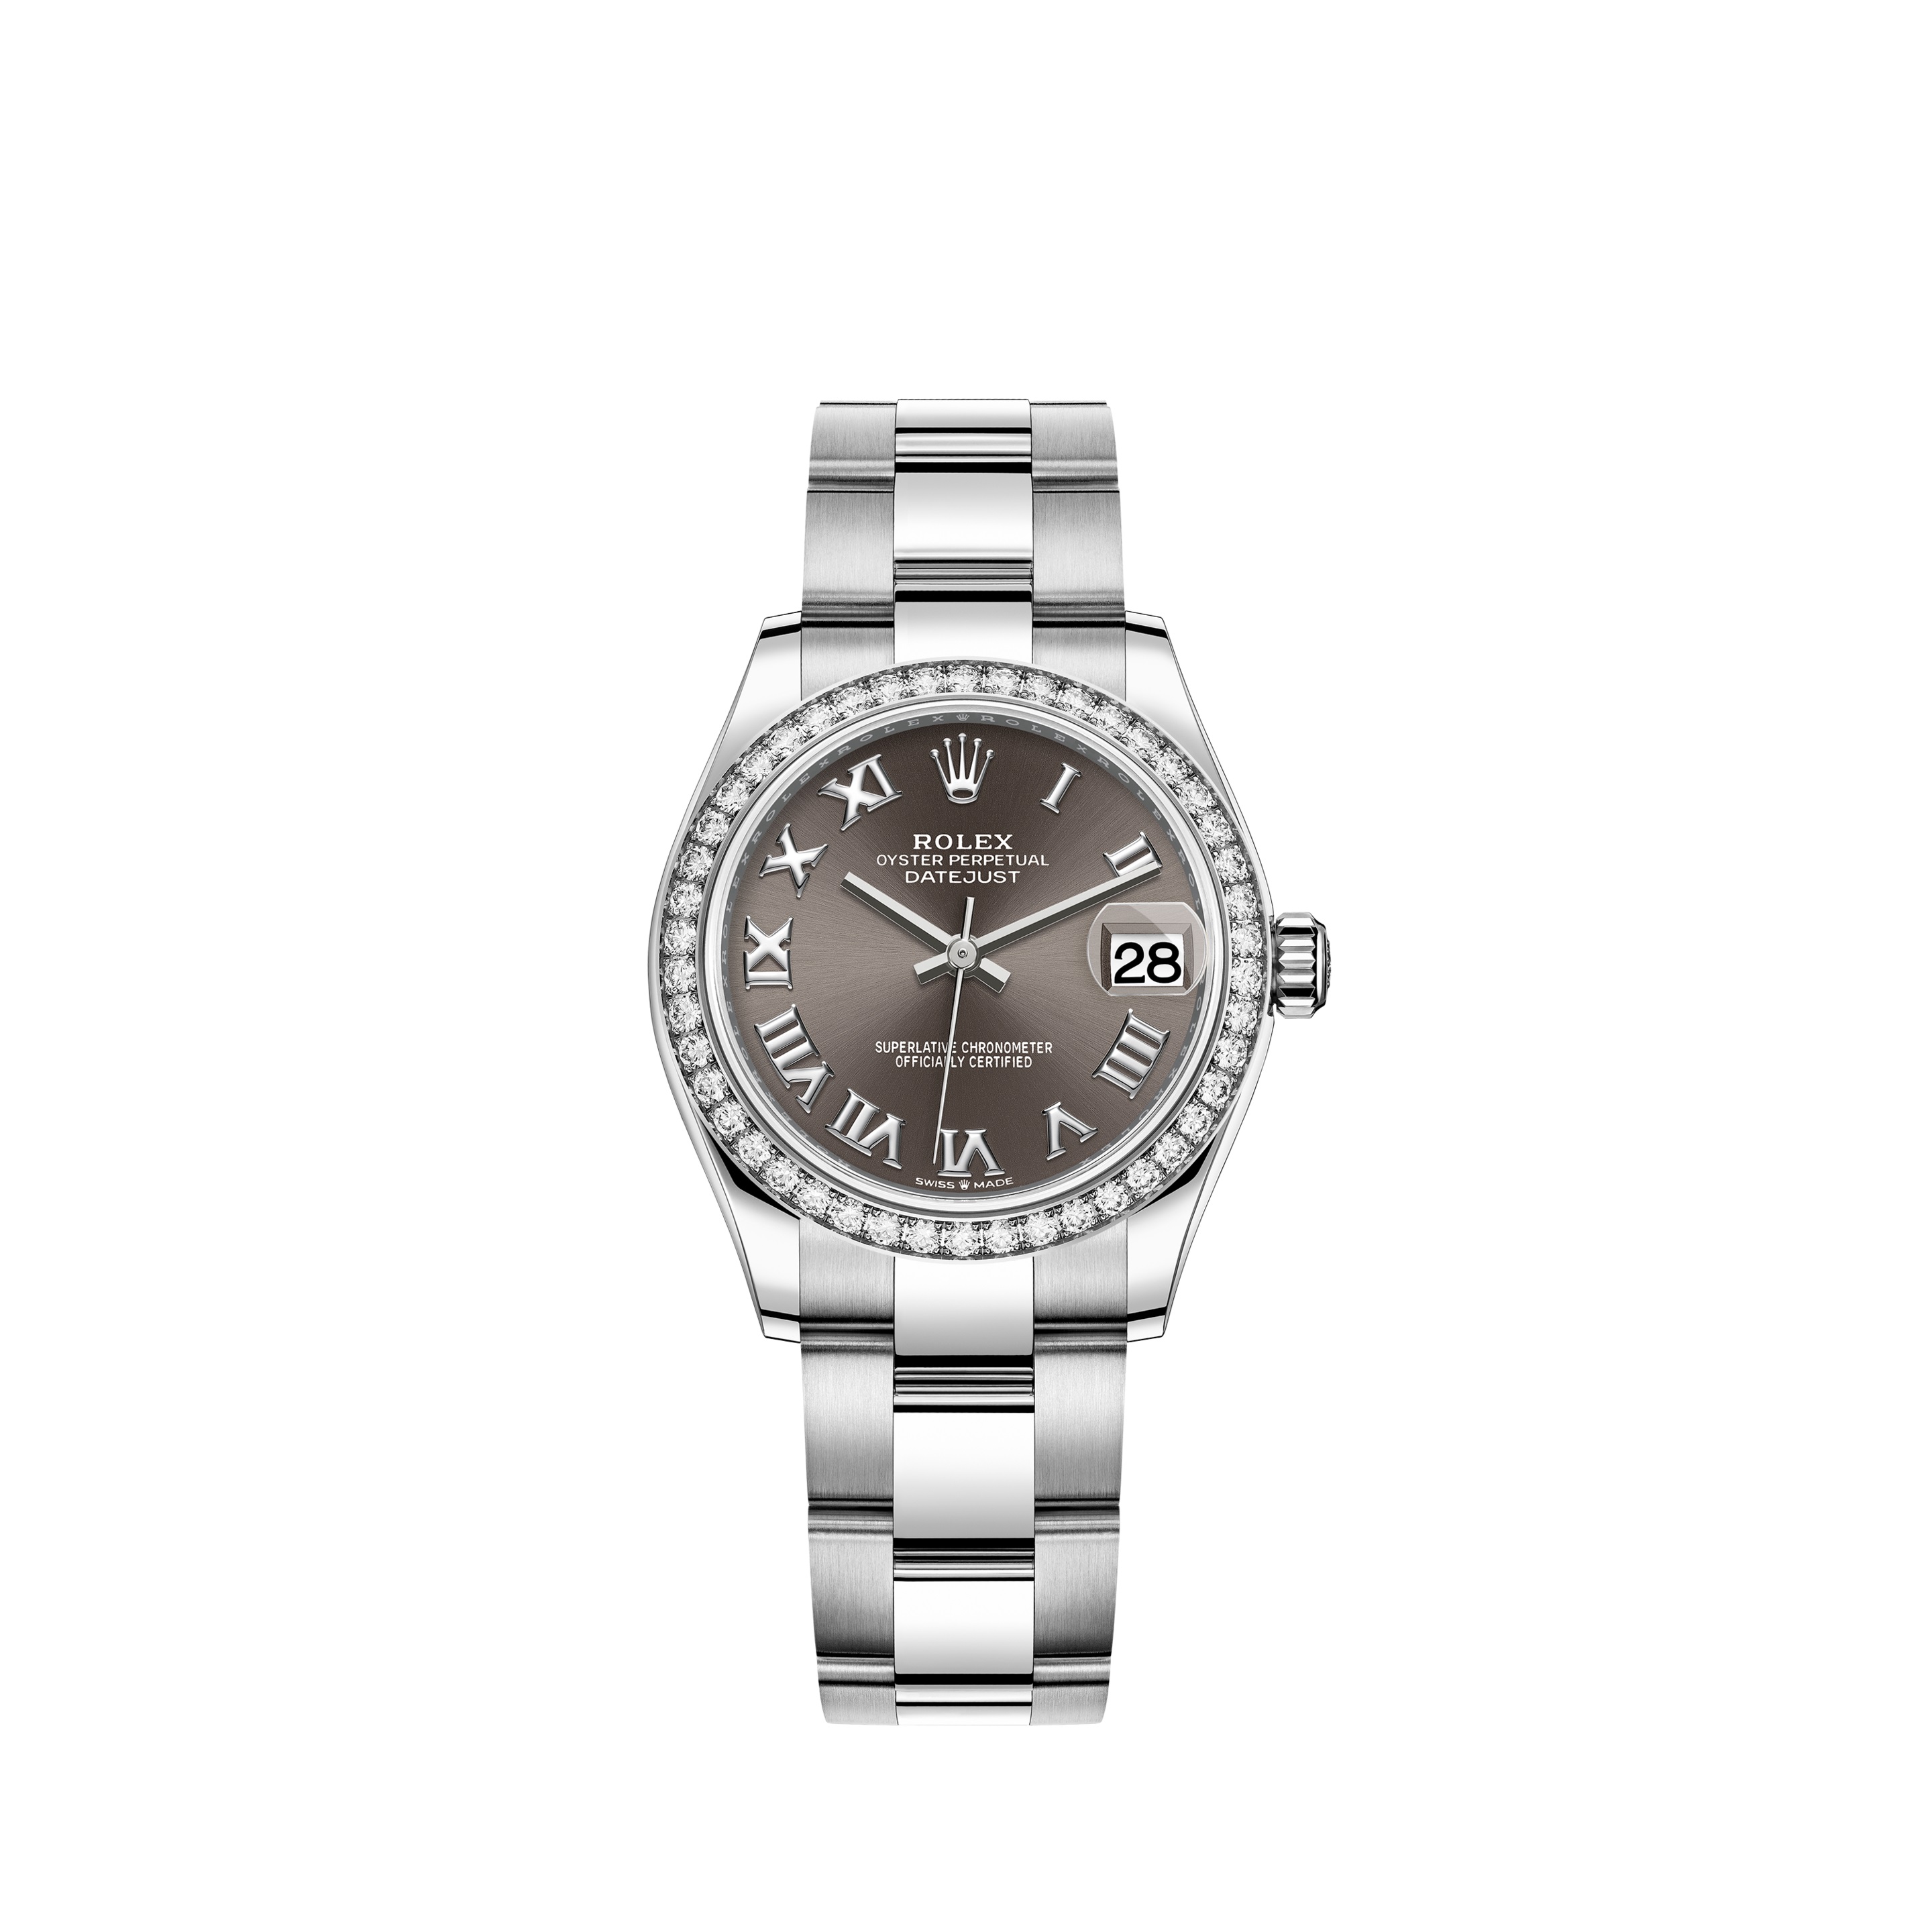 Datejust 31 278384RBR White Gold & Stainless Steel Watch (Dark Grey)